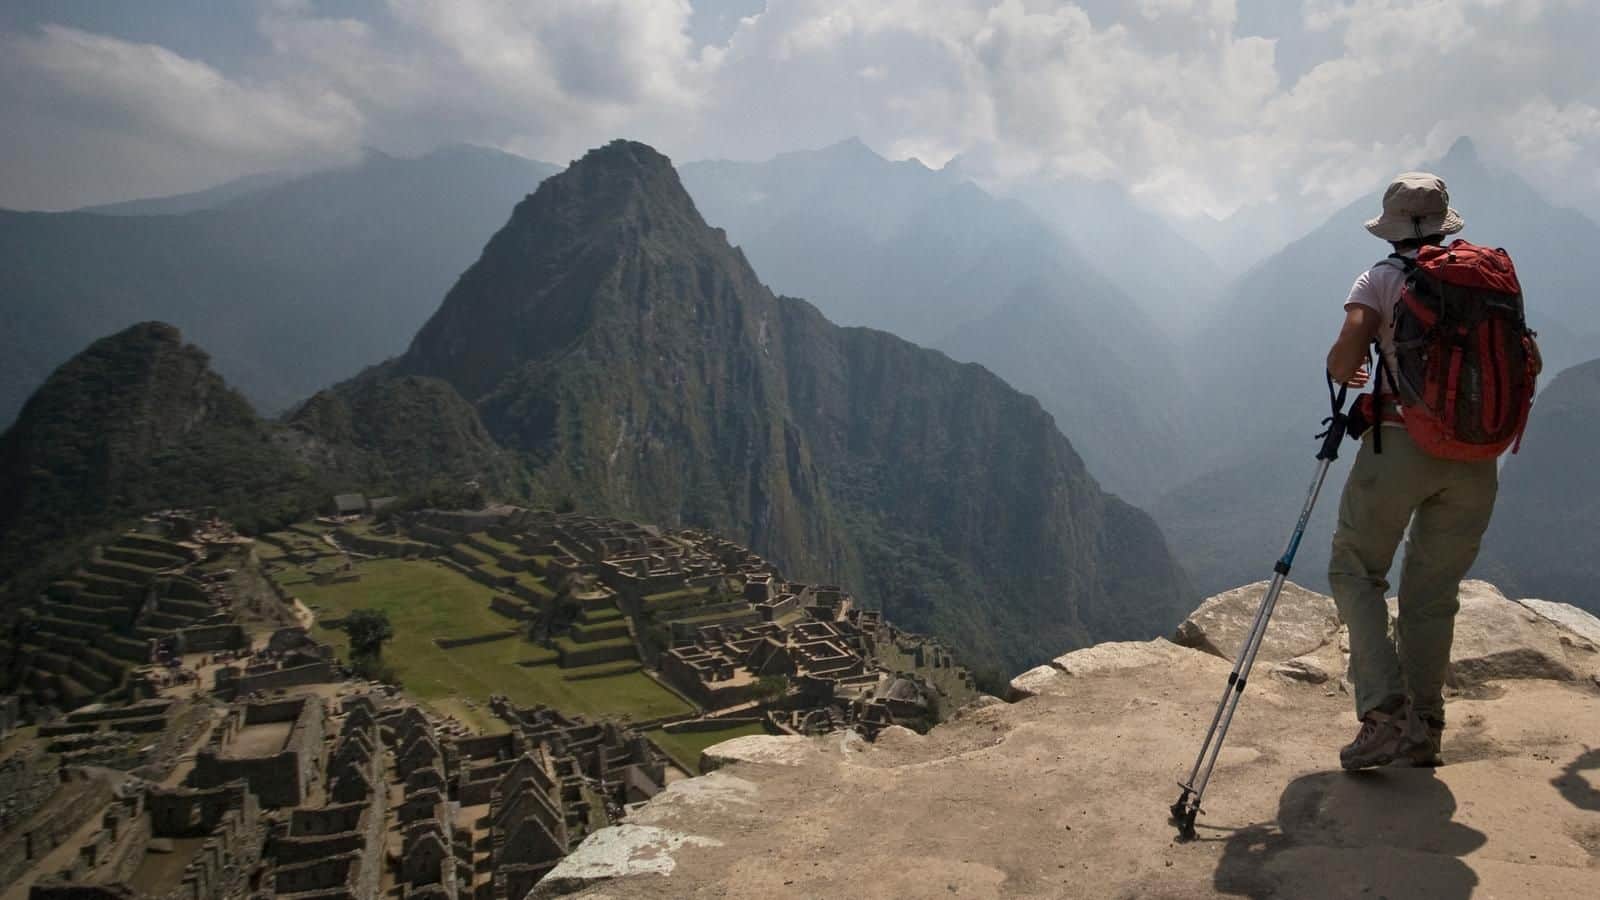 Trek the Inca Trail to Machu Picchu, Peru